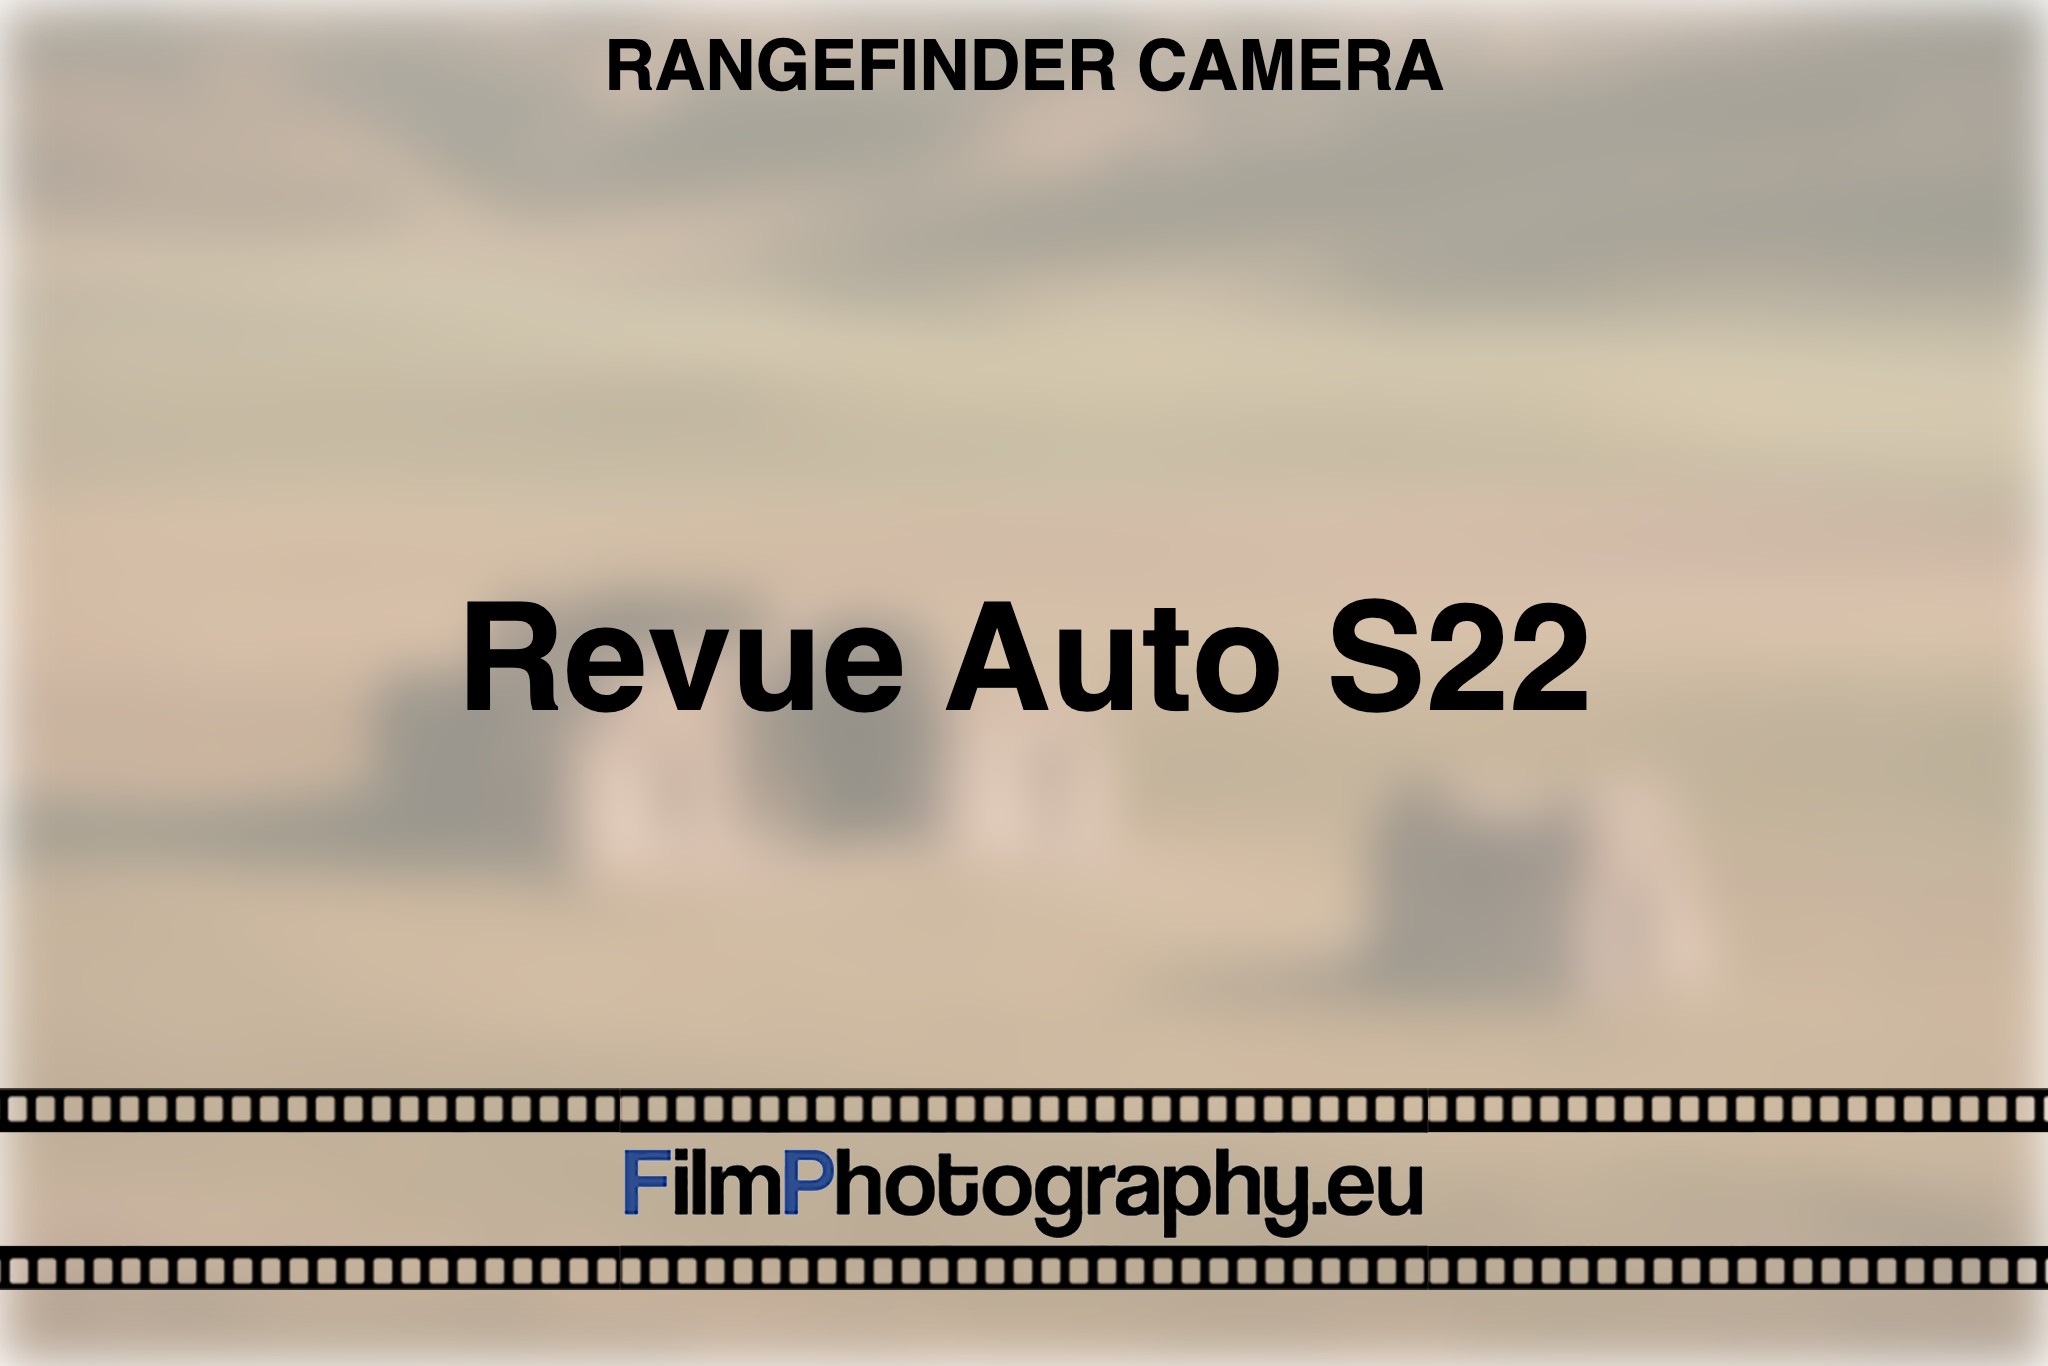 revue-auto-s22-rangefinder-camera-bnv